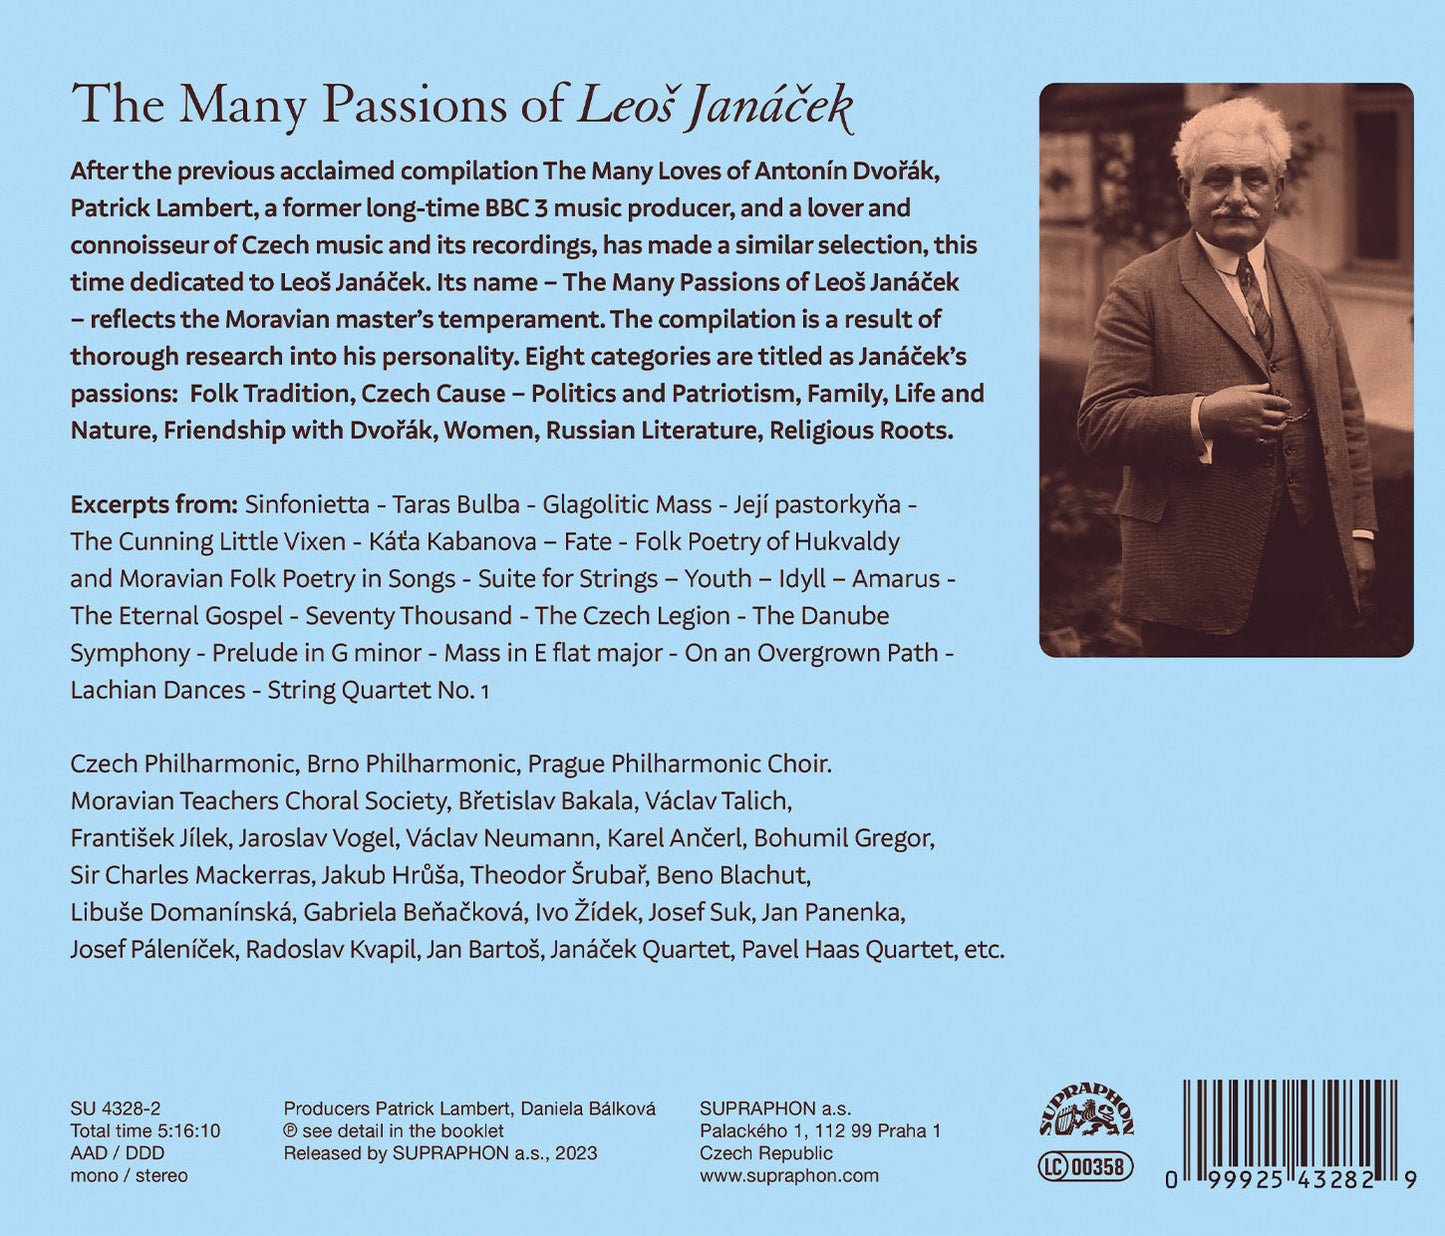 The Many Passions Of Leos Janacek